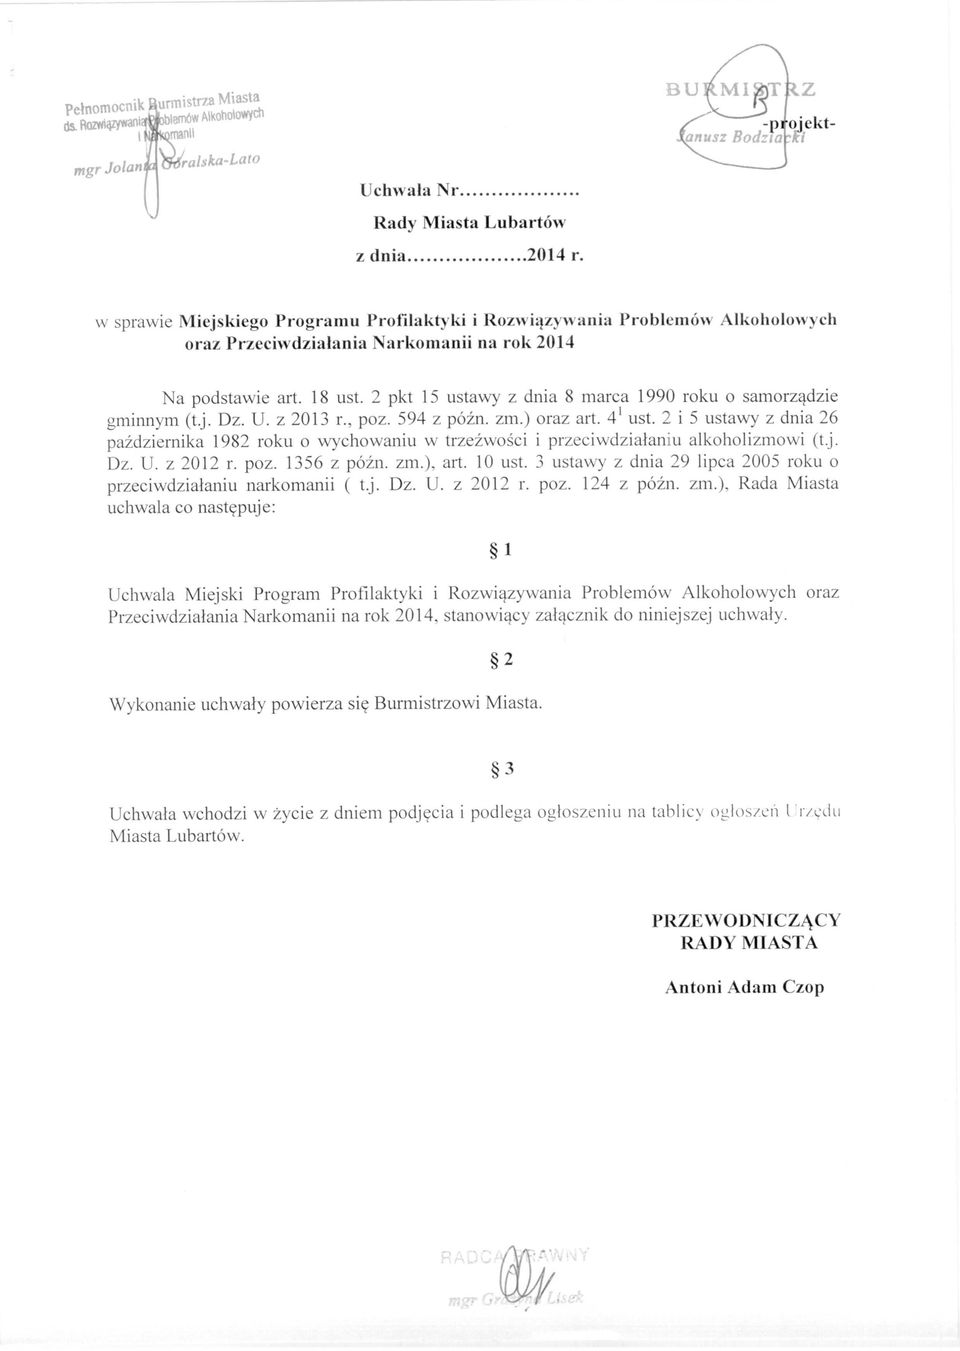 2 pkt 15 ustawy z dnia 8 marca 1990 roku o samorządzie gminnym (t.j. Dz. U. z 2013 L, poz. 594 z późno zm.) oraz art. 4' ust.